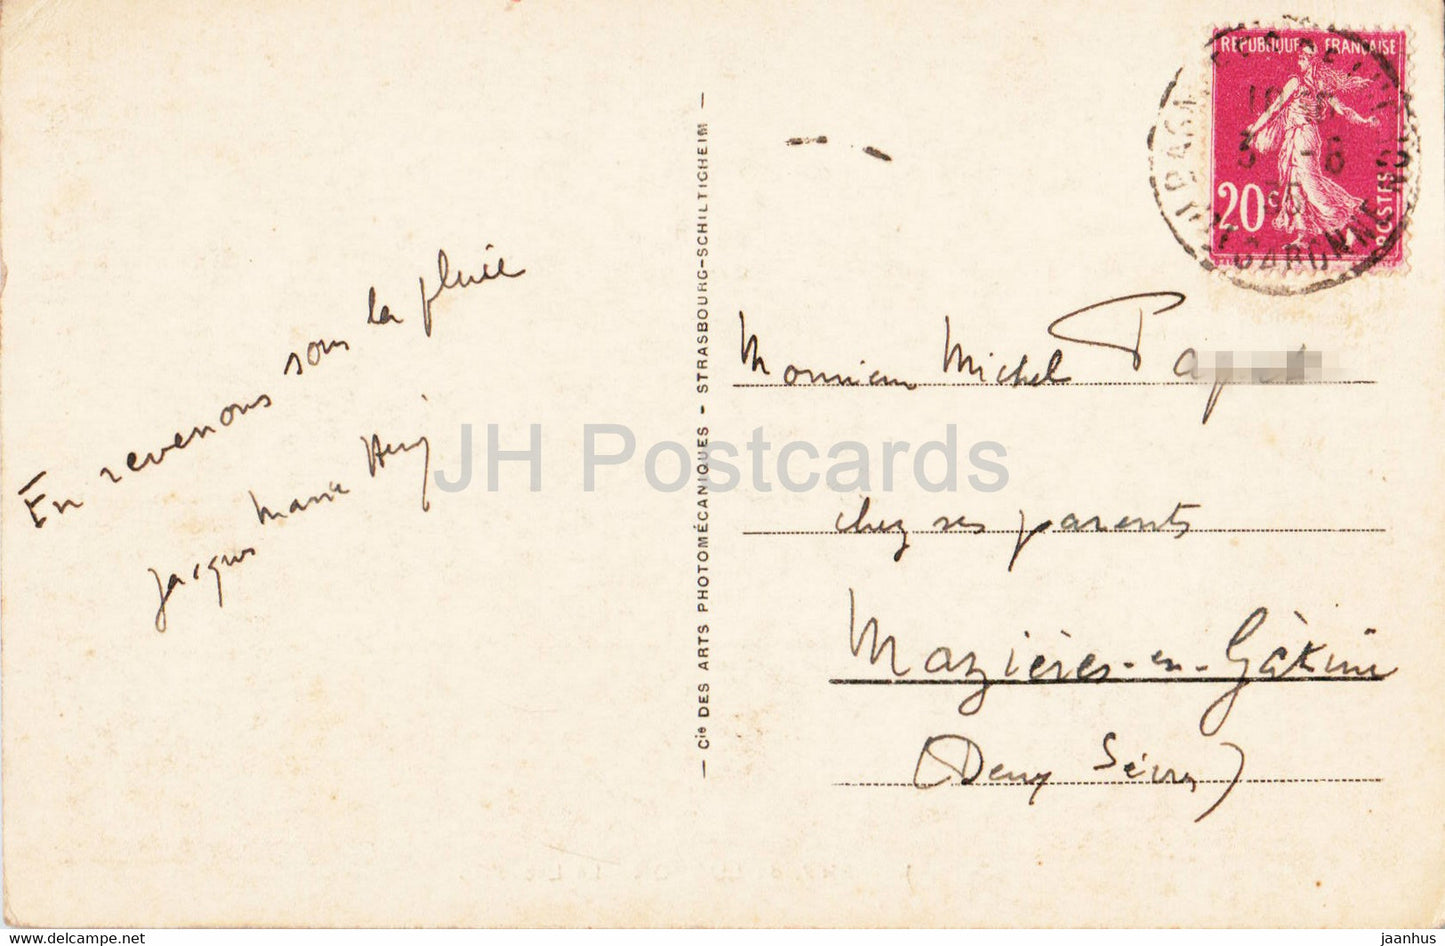 Env de Luchon - Le Lac d'Oo - 108 - carte postale ancienne - 1935 - France - occasion